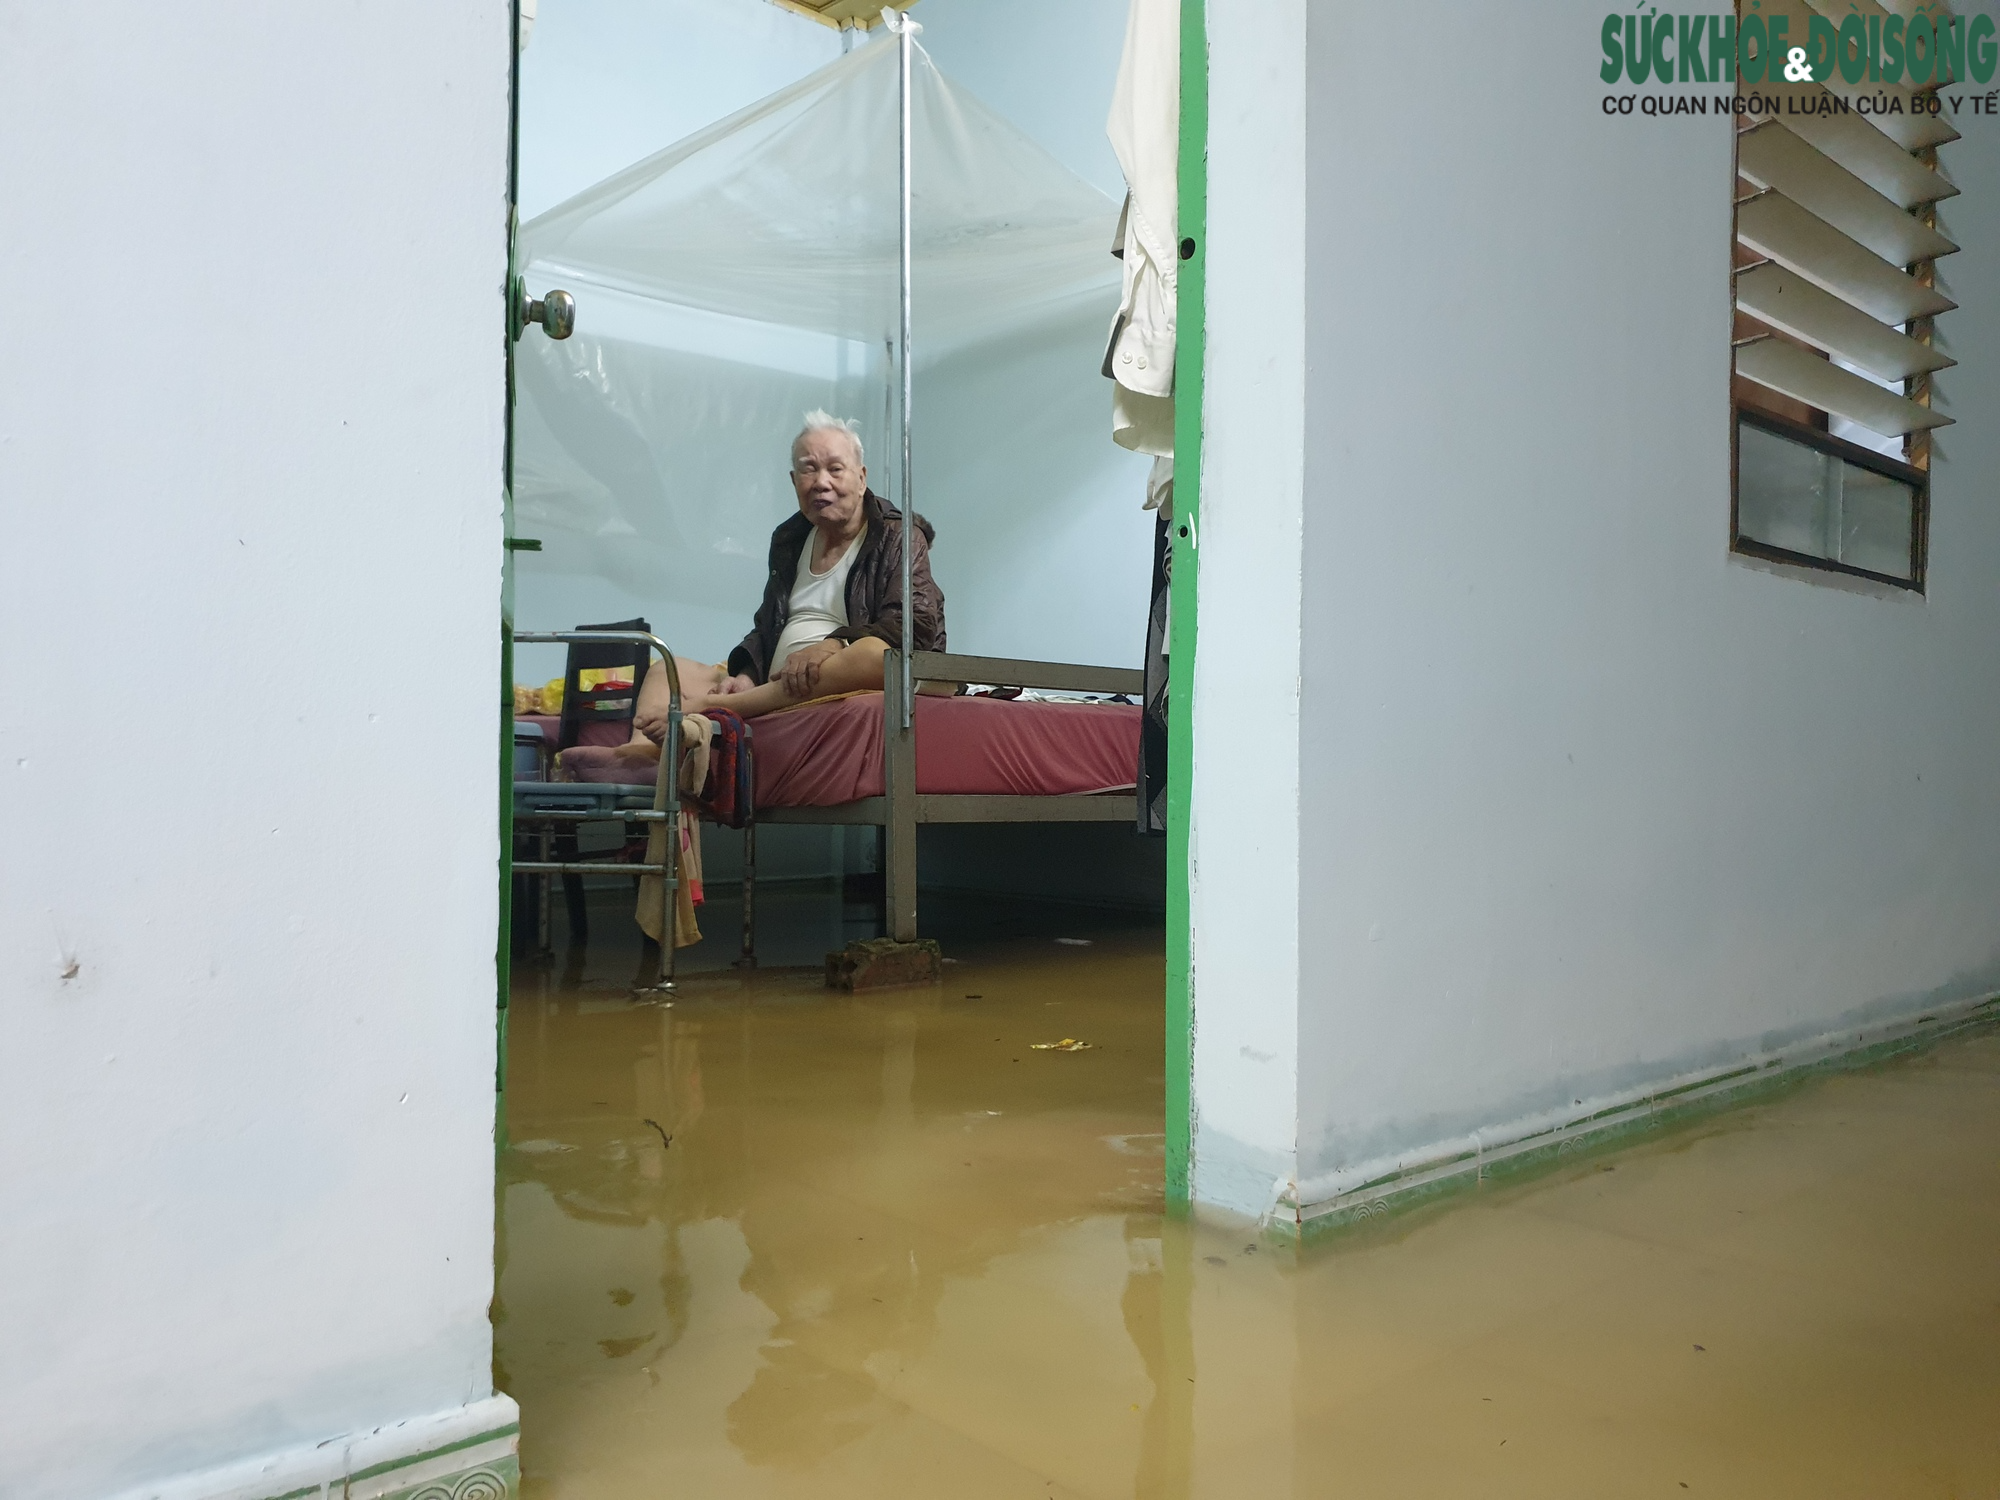 Mùa mưa lũ về người dân nơm nớp nỗi lo ngập lụt - Ảnh 2.